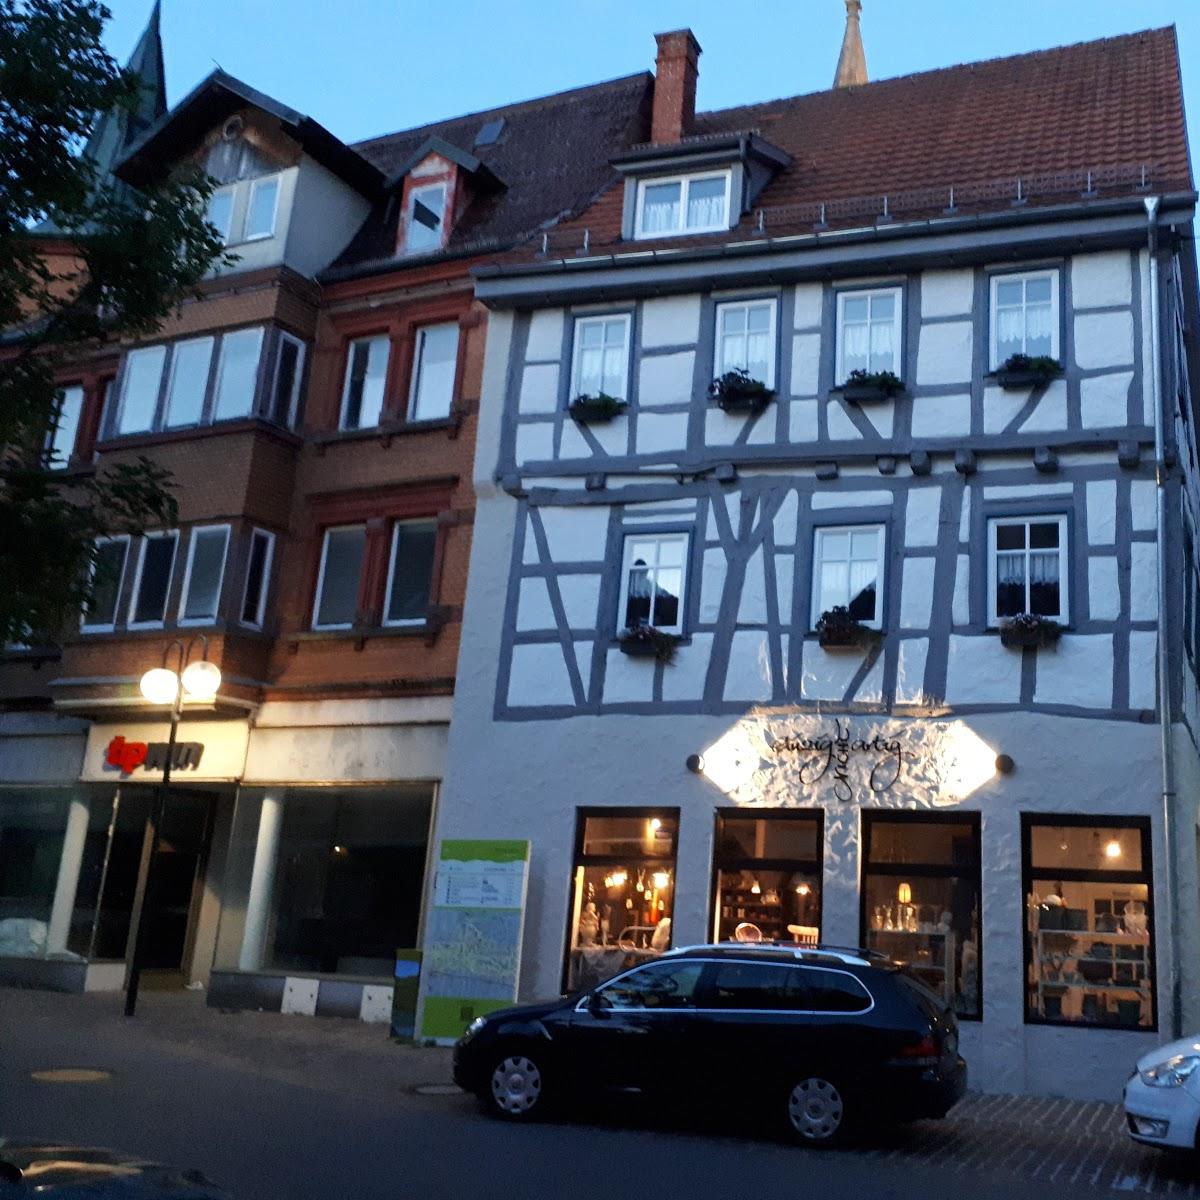 Restaurant "einzig nicht artig" in Münsingen